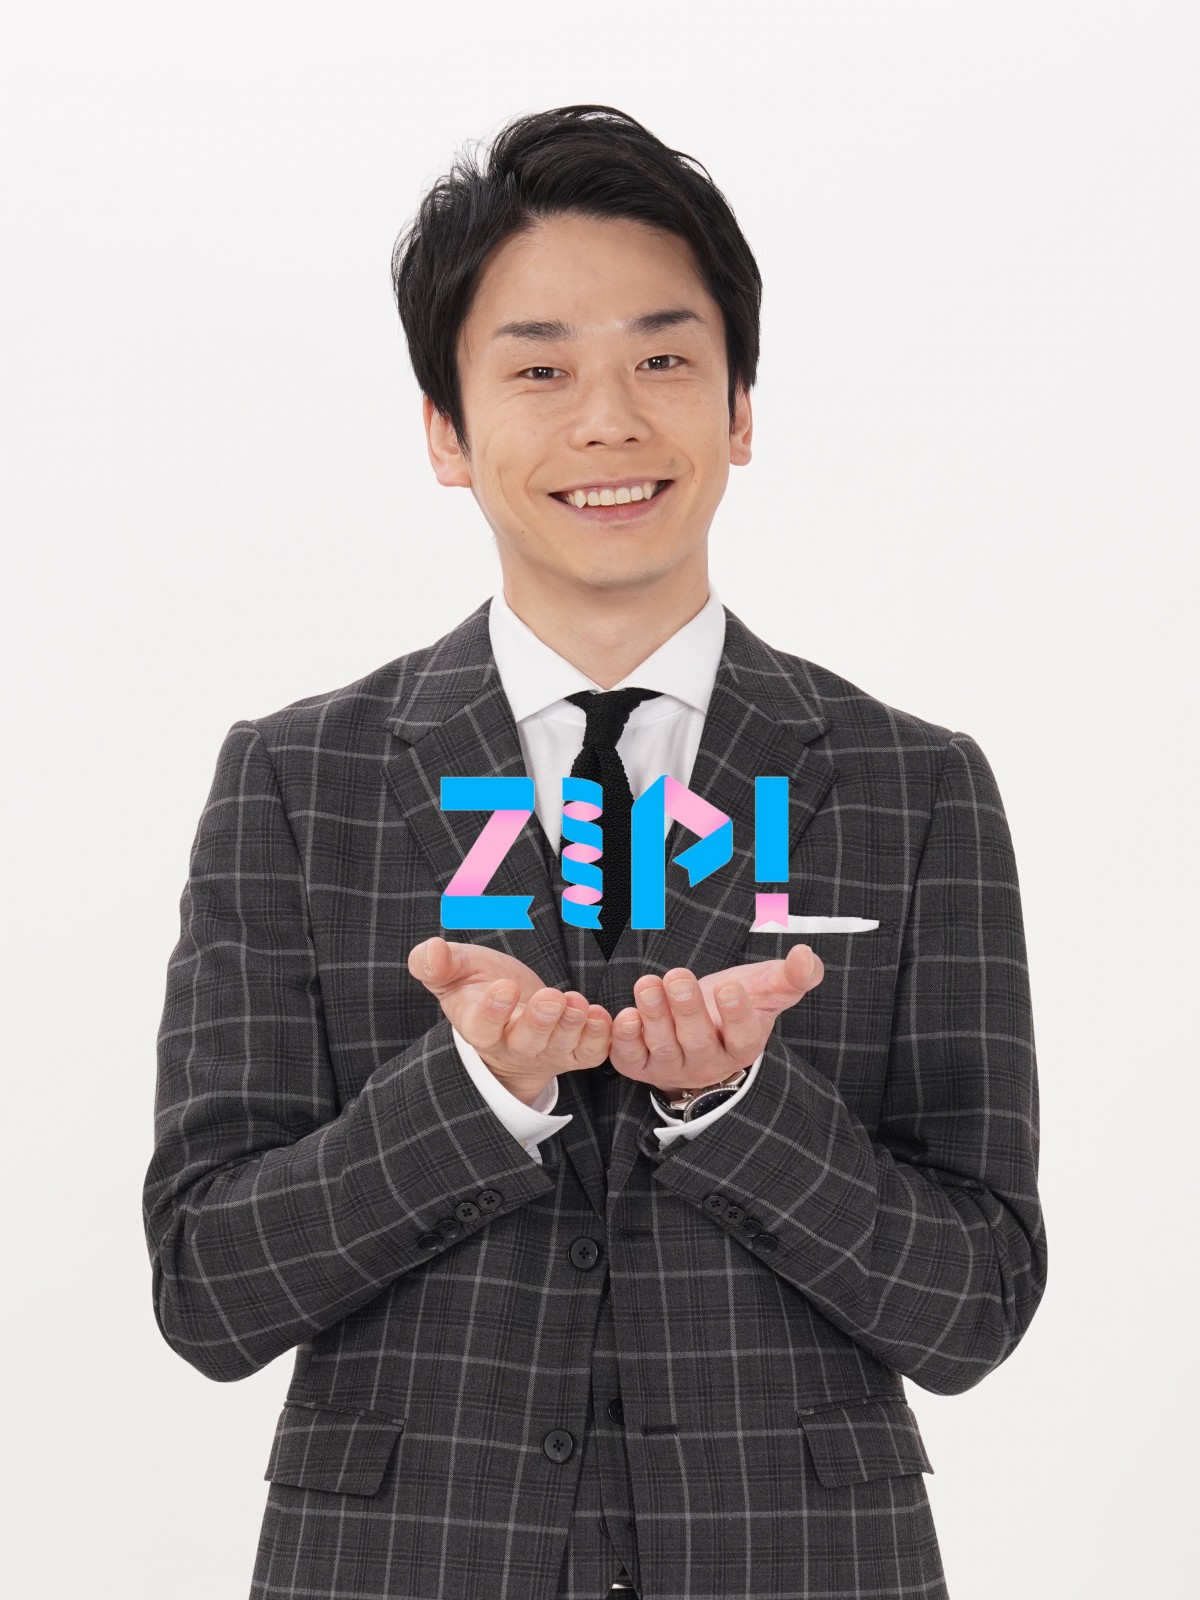 かまいたち濱家『ZIP！』水曜パーソナリティー就任 情報番組初 